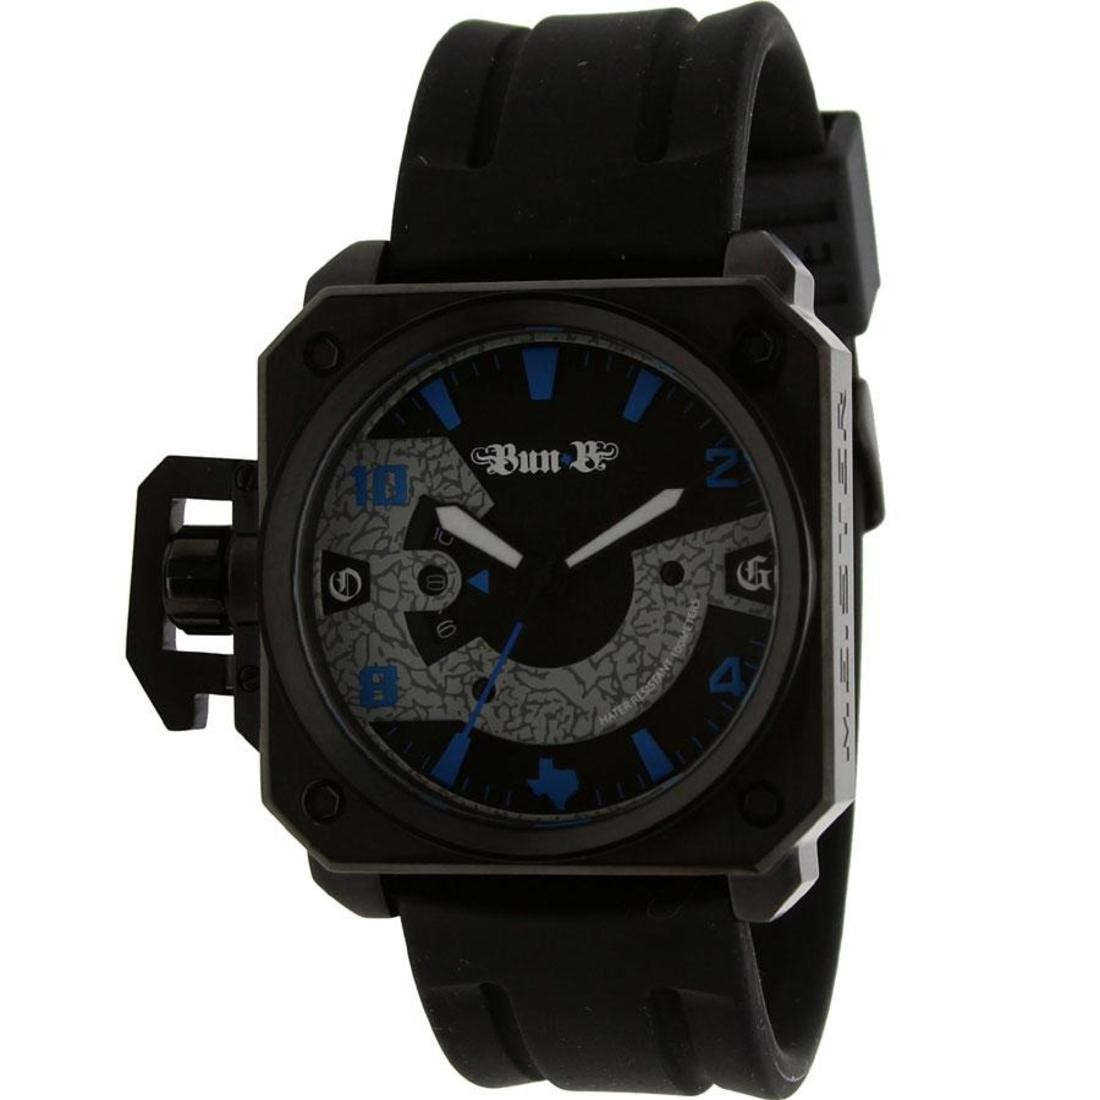 Meister Chief Rubber Strap Watch - Bun B LTD (black / blue) - PYS.com Exclusive